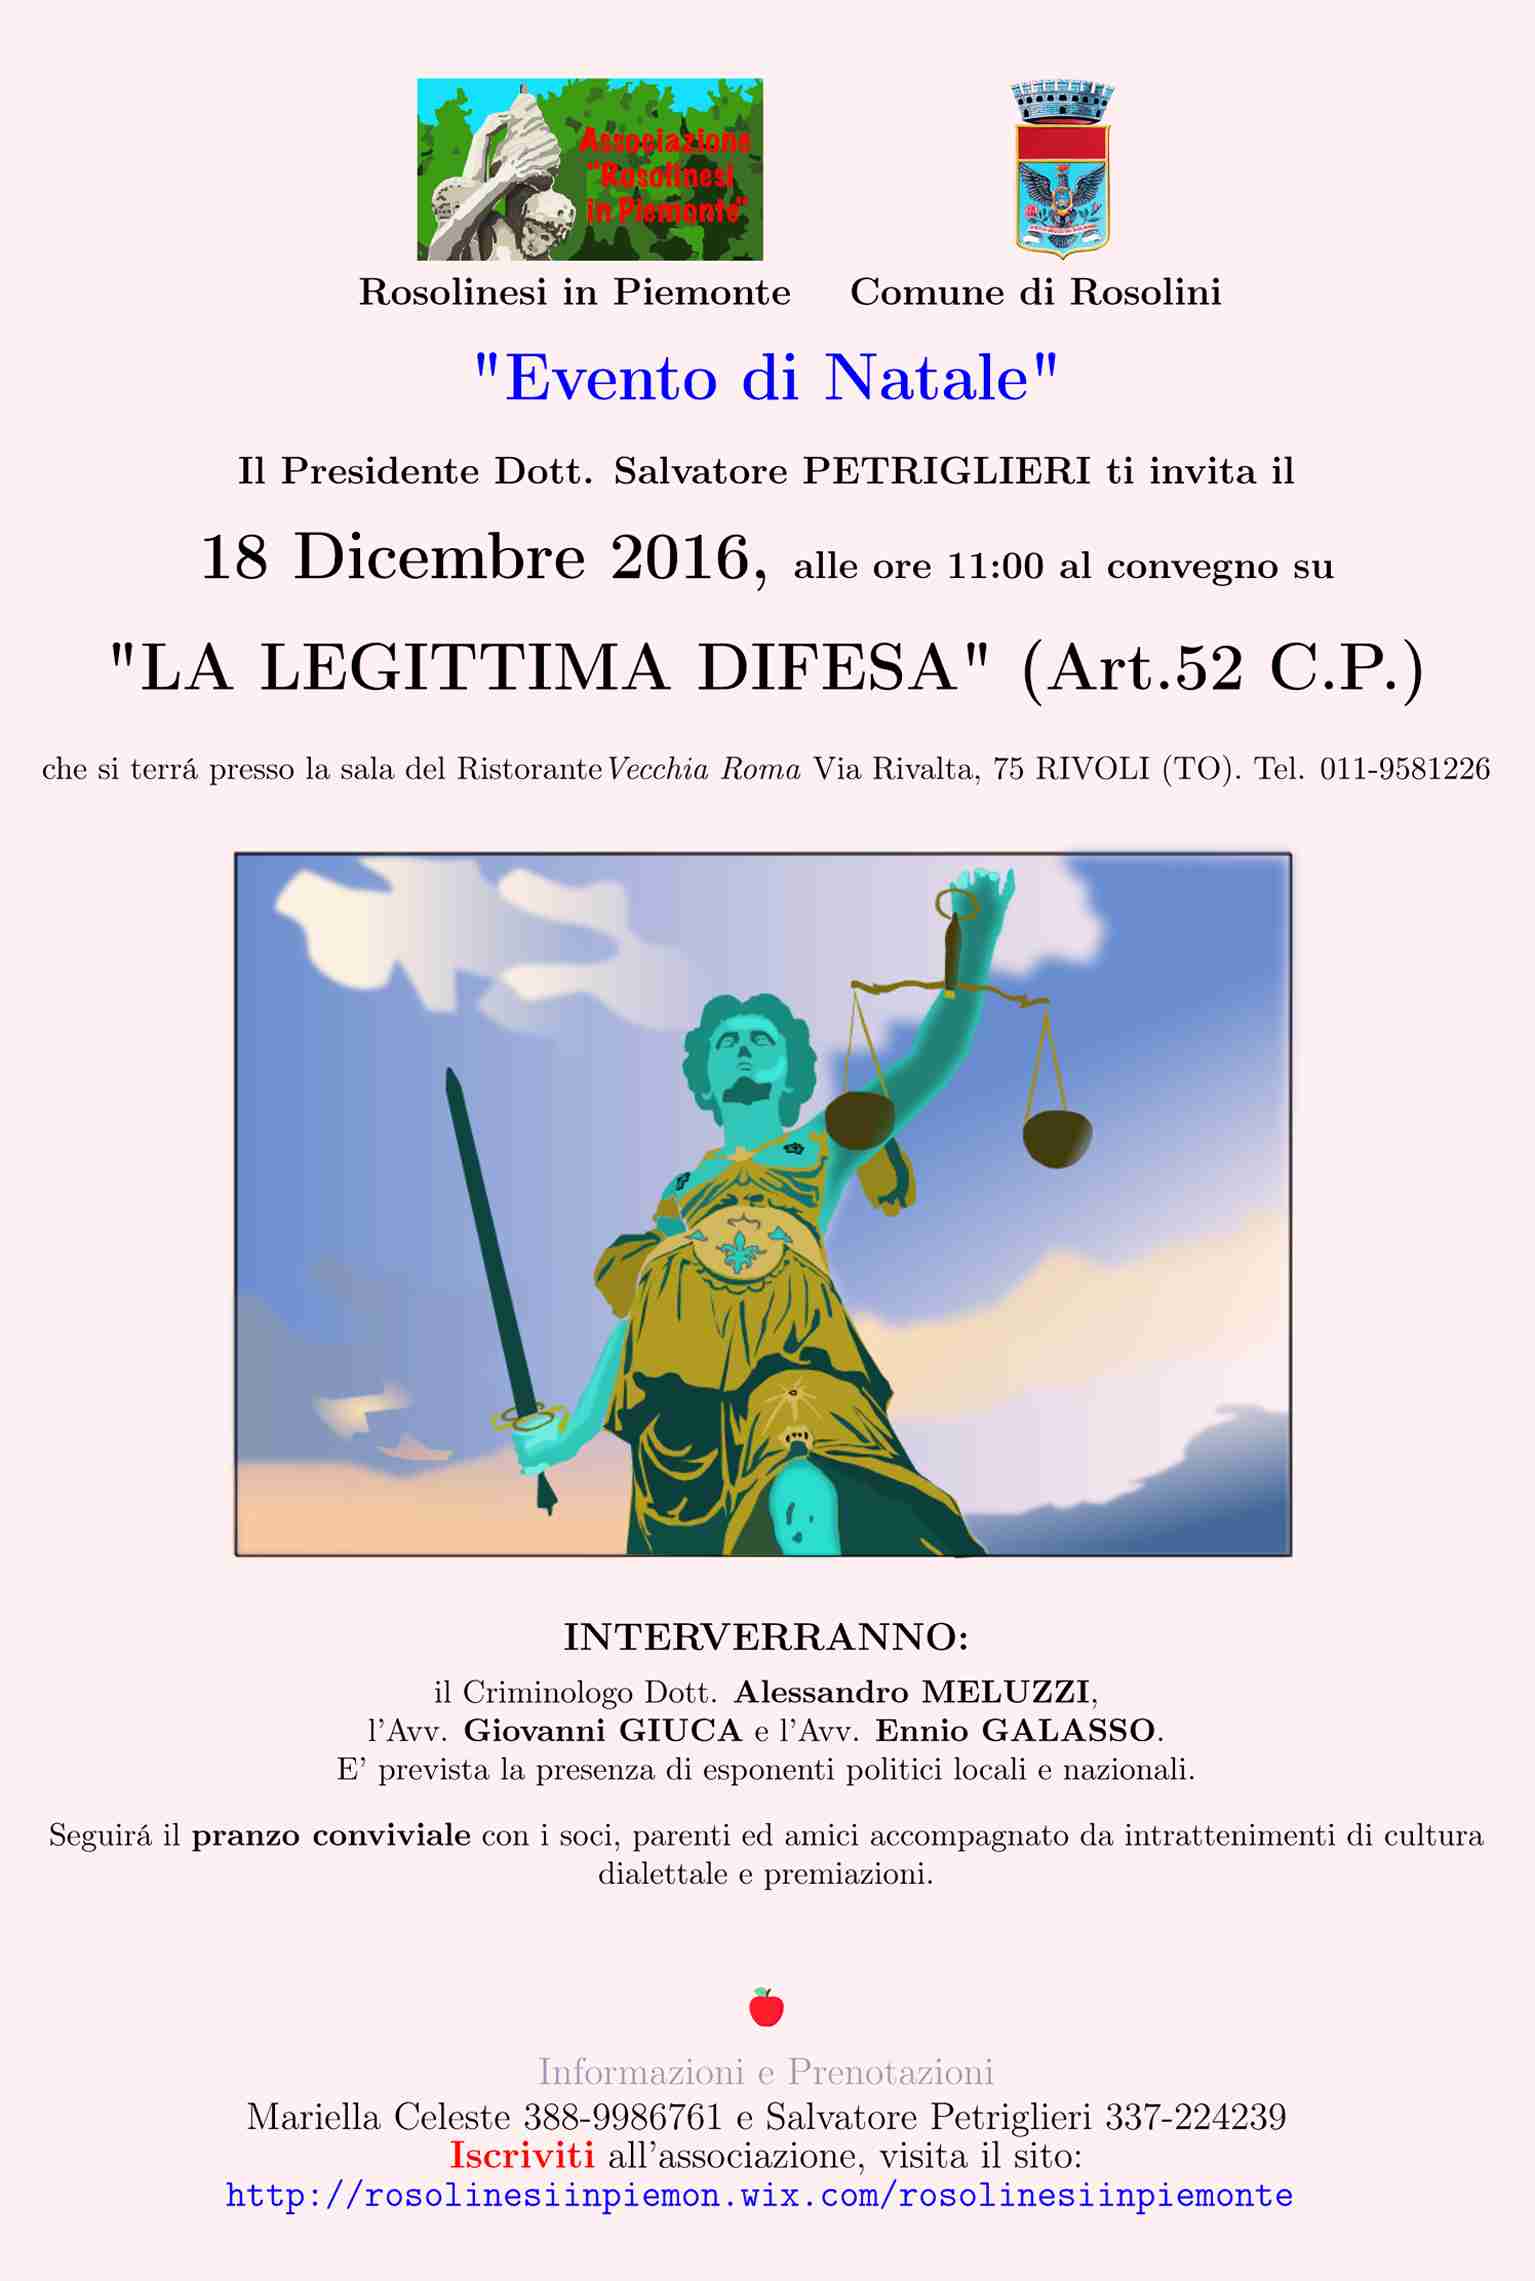 “La legittima difesa”, il 18 dicembre il convegno organizzato dai “Rosolinesi in Piemonte”